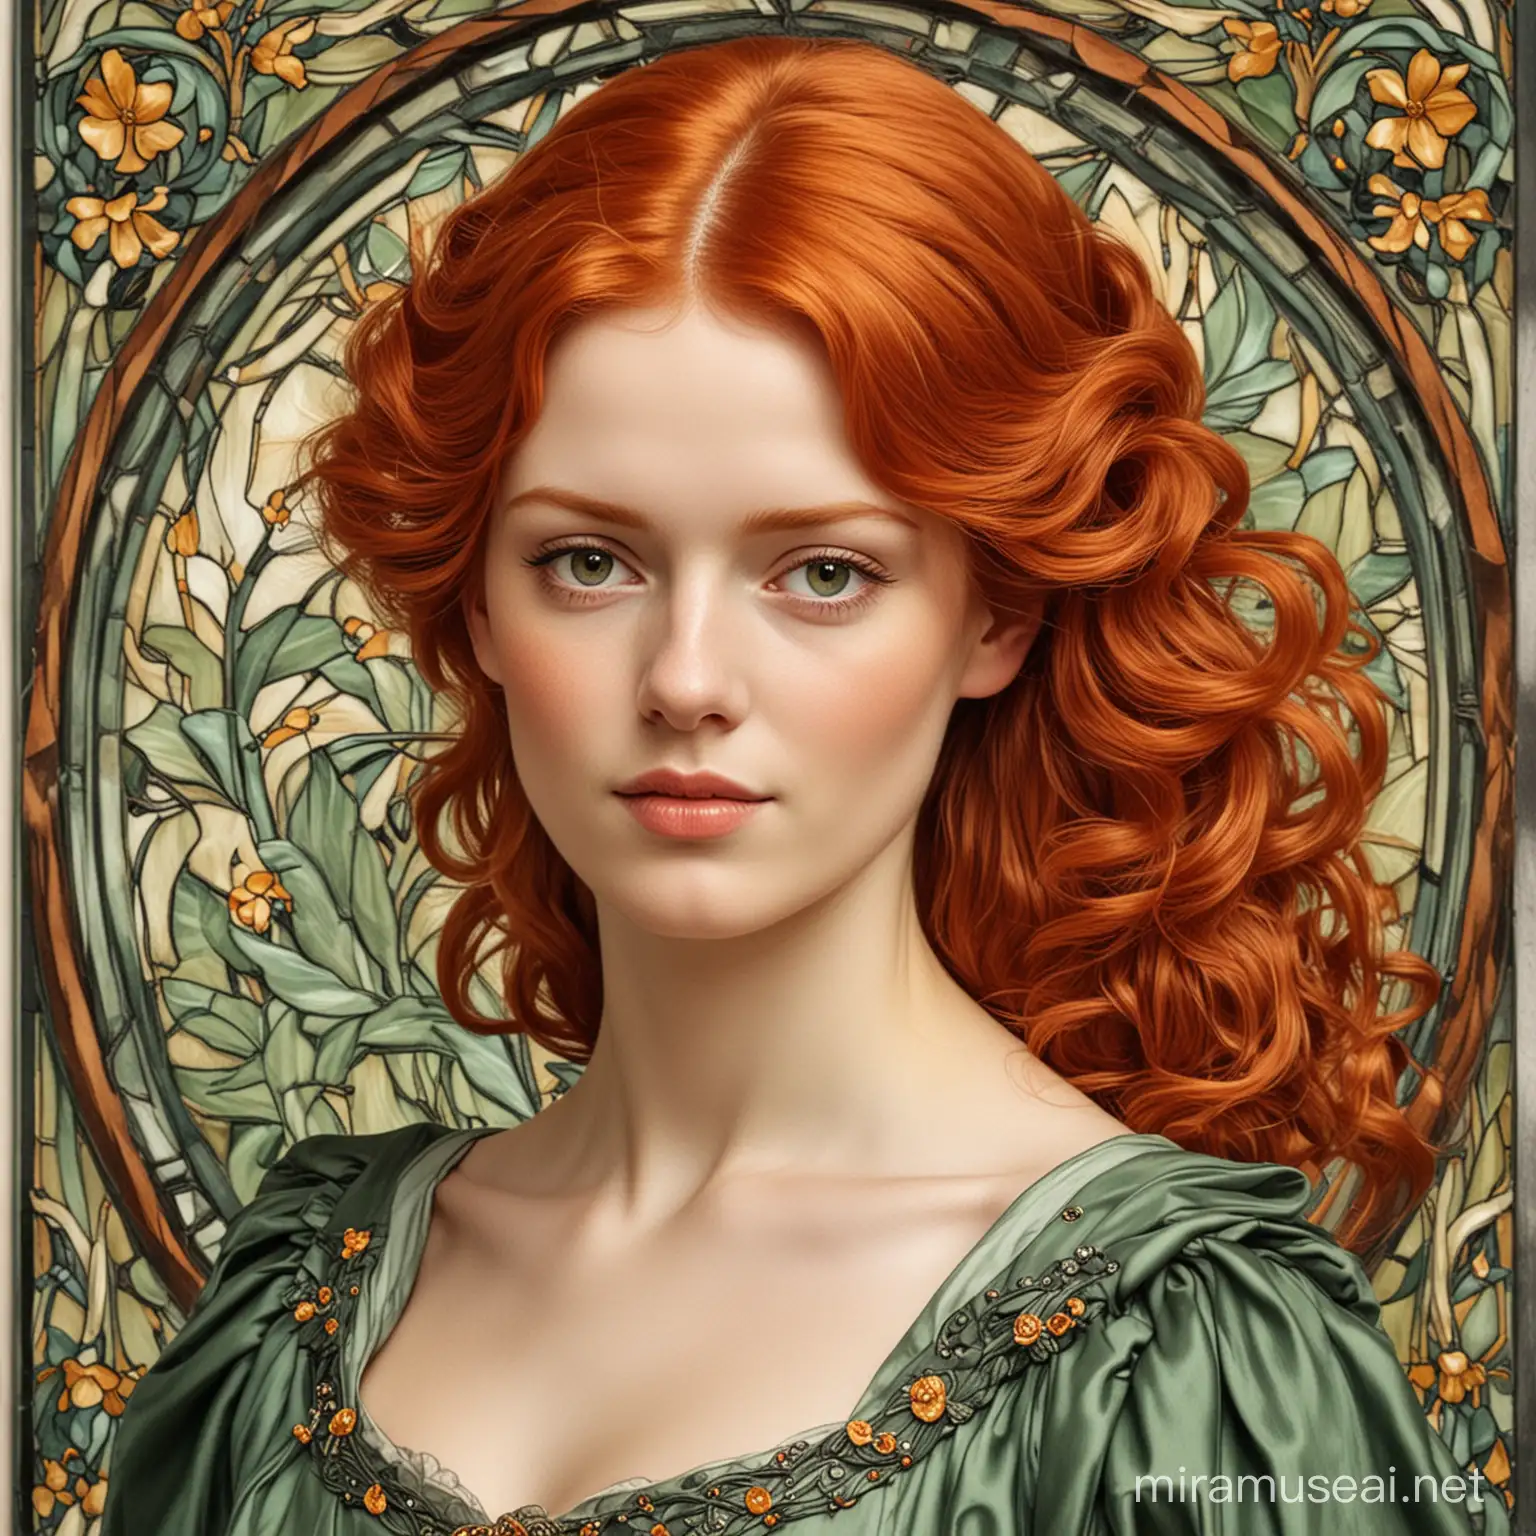 Elegant Redheaded Woman in Jugendstil Style